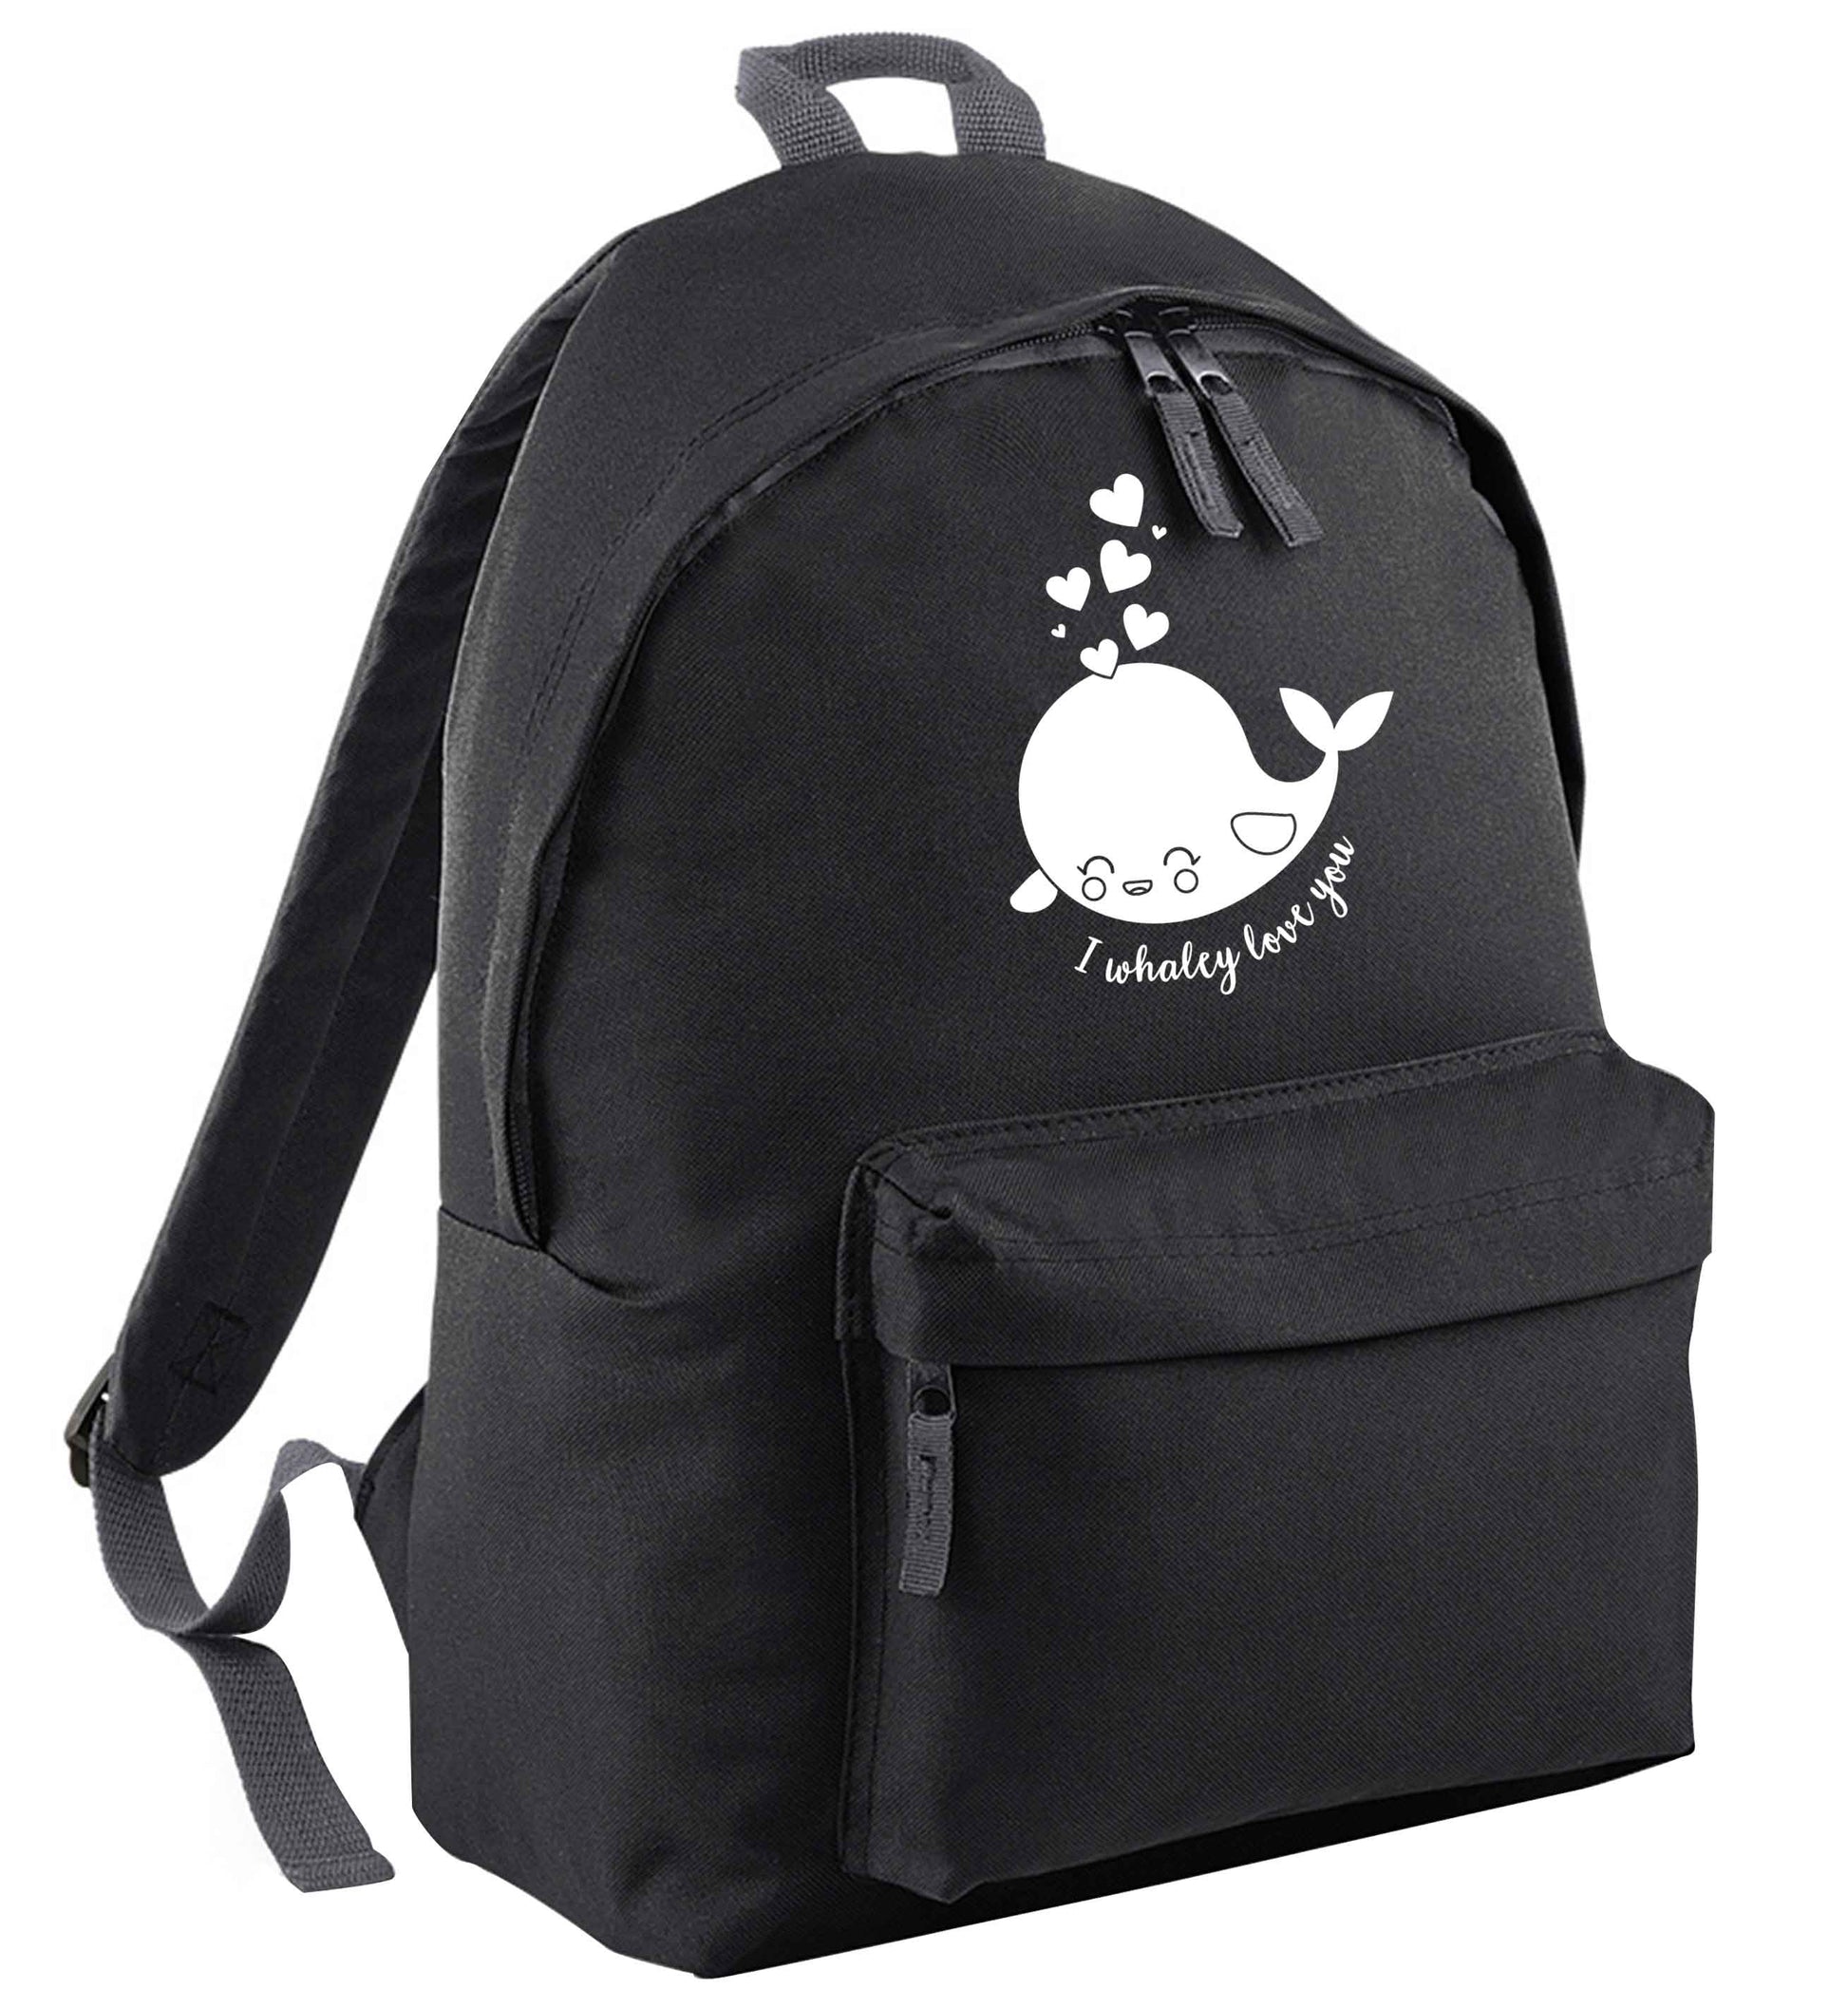 I whaley love you black adults backpack